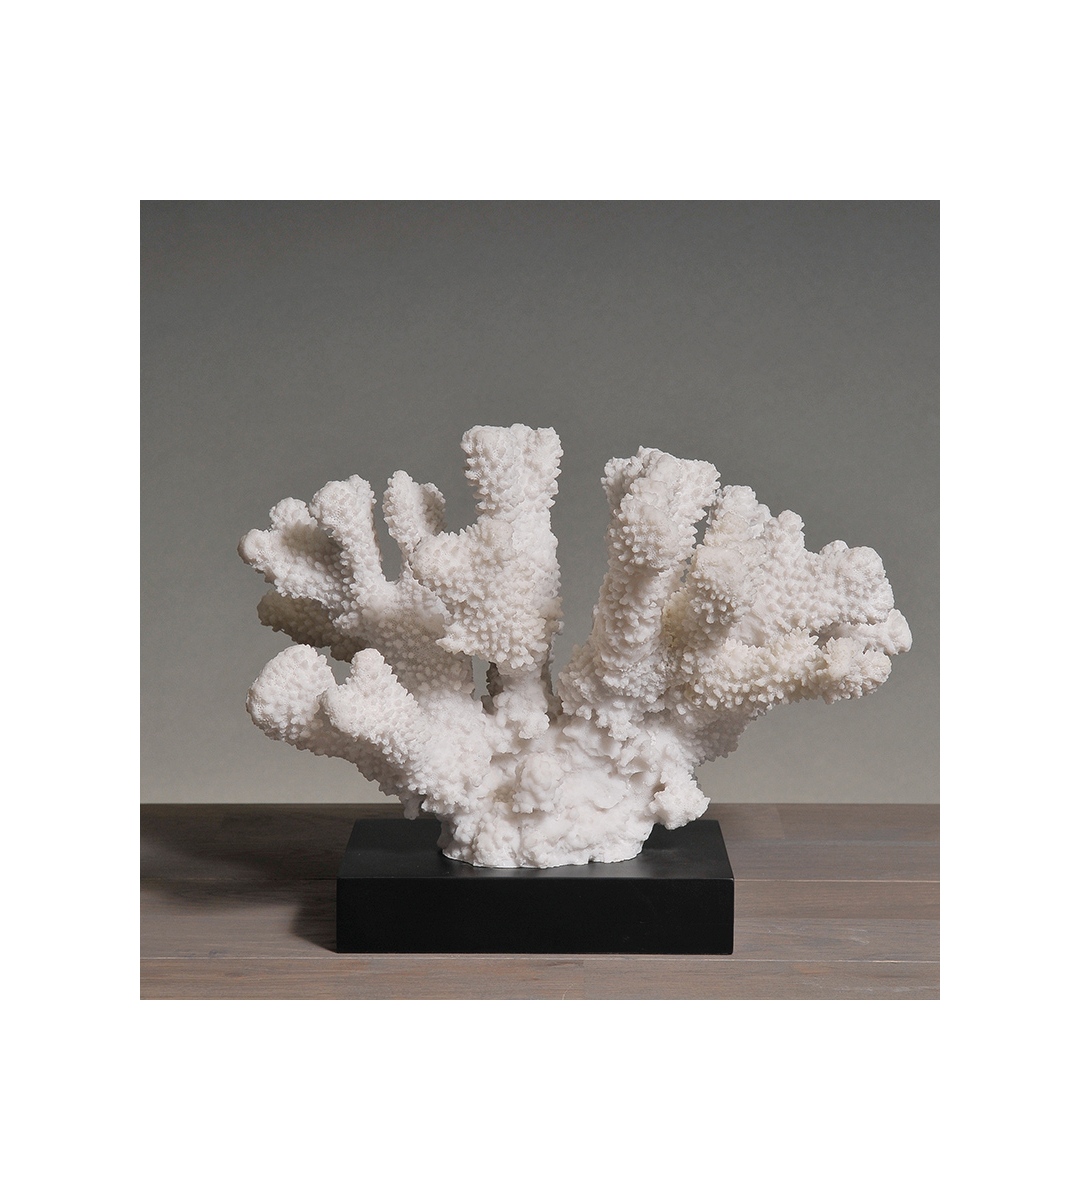 Medium White Coral